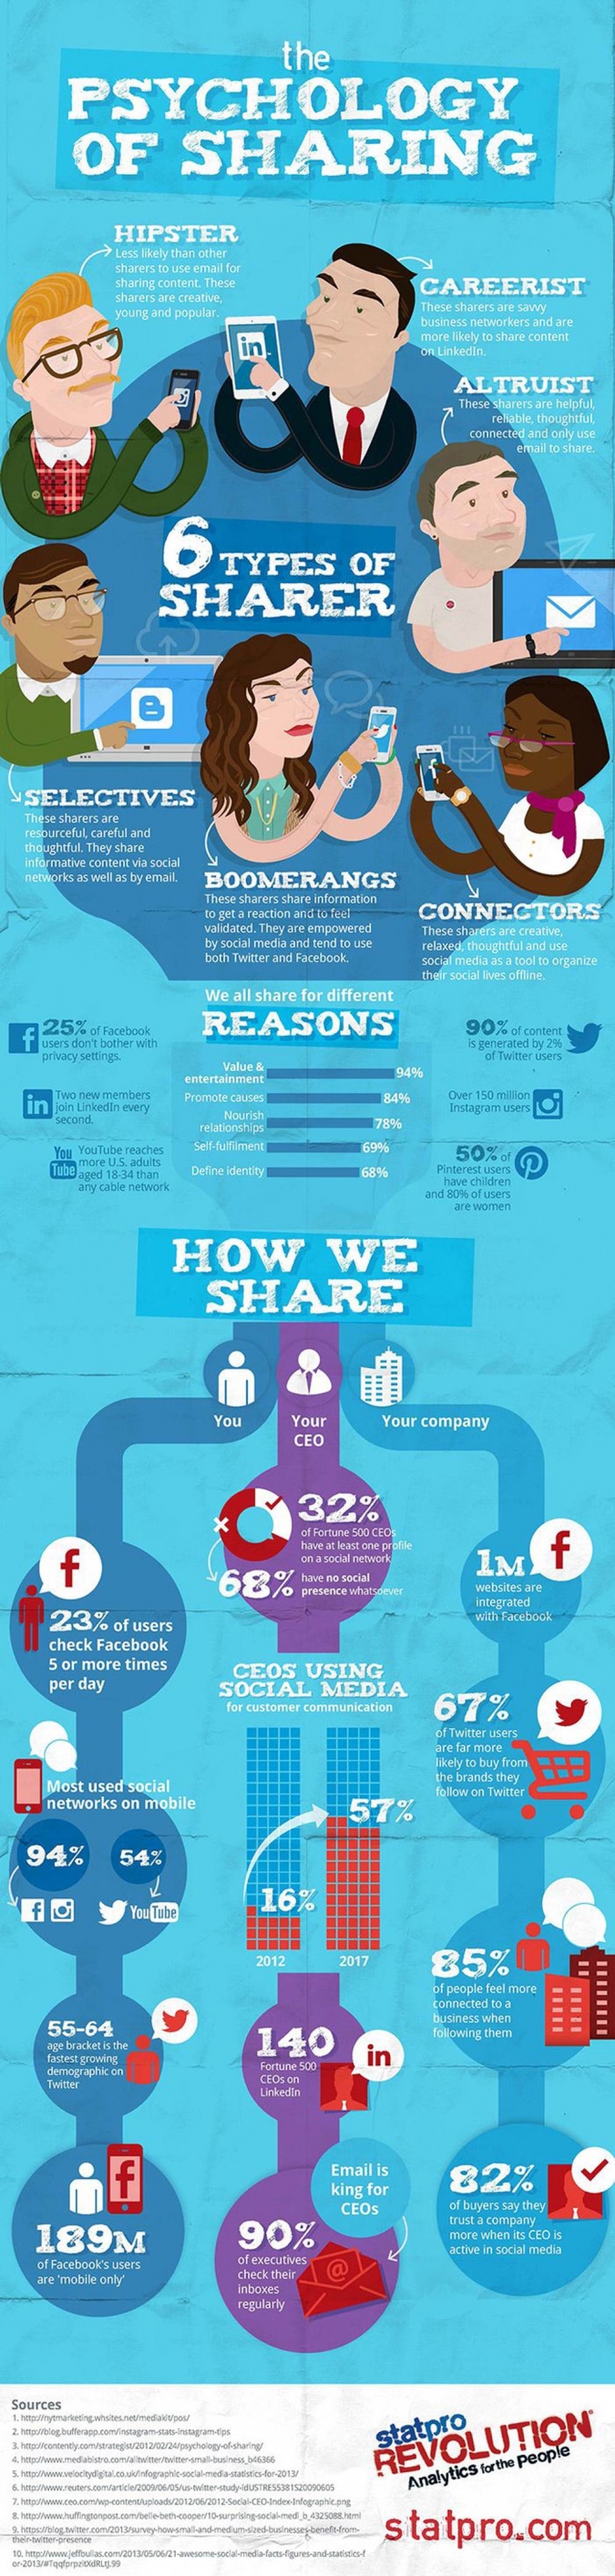 Psychologie der Social Shares – Warum werden Social Media Beiträge geteilt?